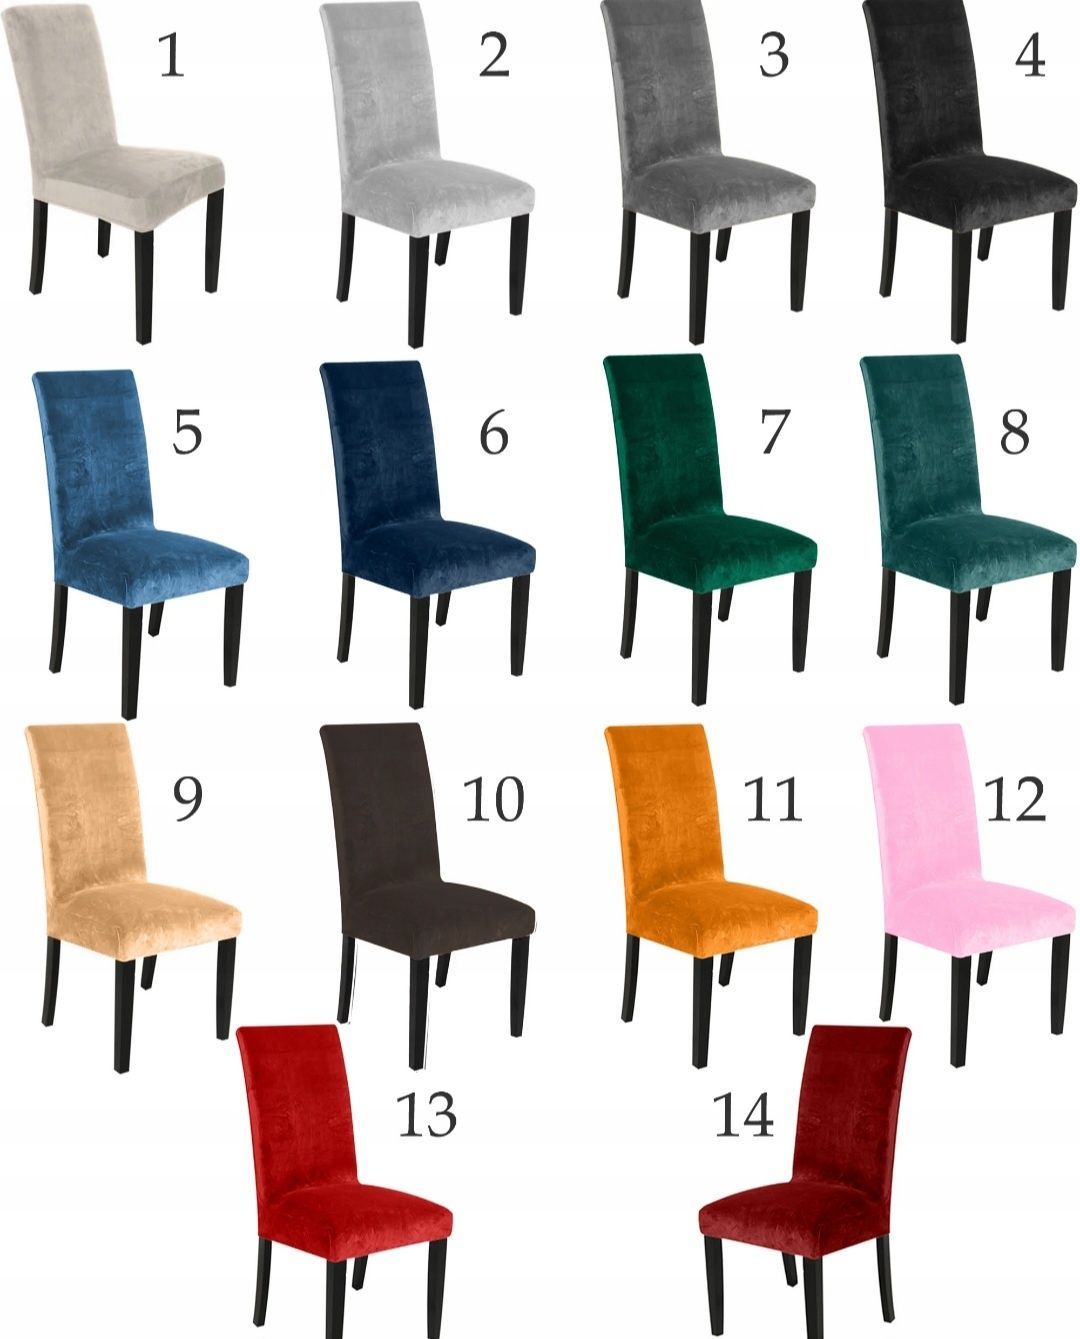 Pokrowce welurowe na krzesła 6 sztuk - 13 kolorów PROMOCJA WEEKEND